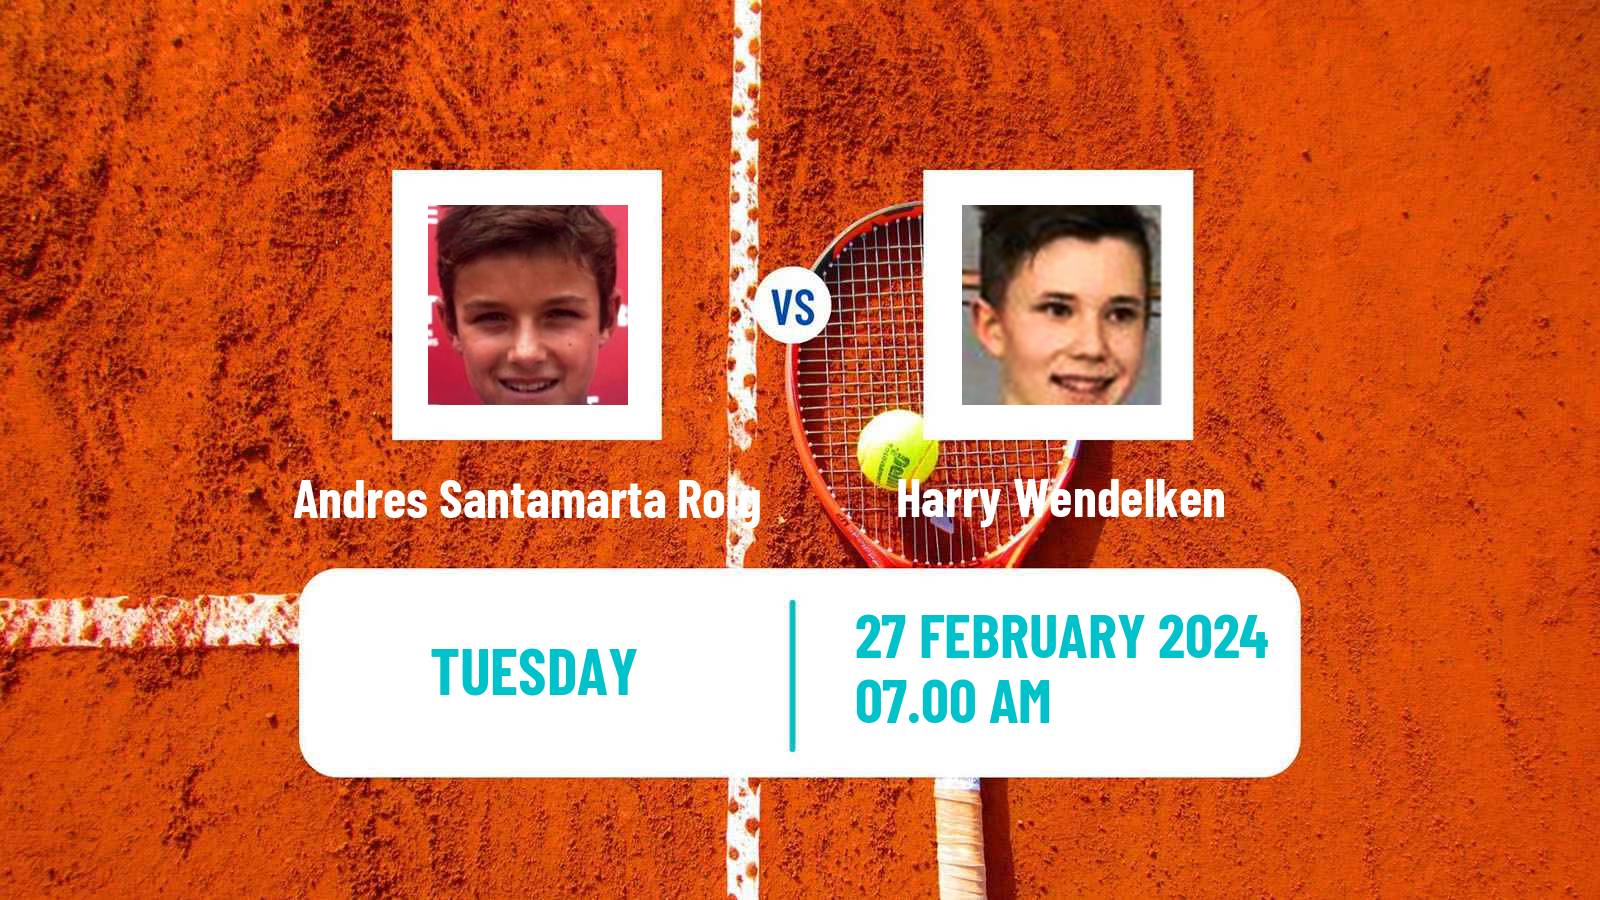 Tennis ITF M15 Villena 2 Men Andres Santamarta Roig - Harry Wendelken